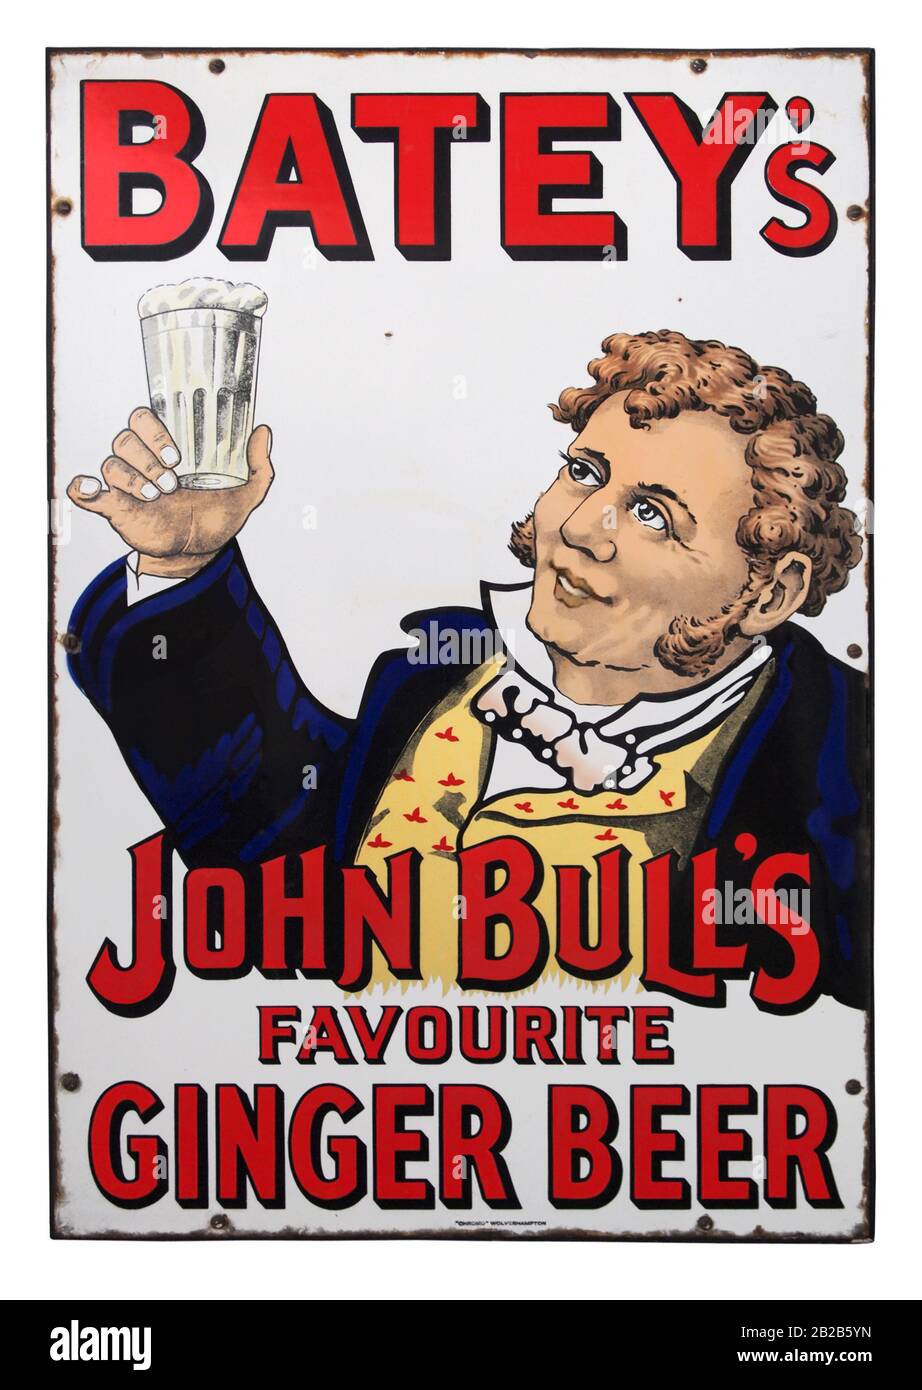 Un vieux panneau coloré en émail victorien (porcelaine) pour la bière de Batey's Ginger, qui indique que la boisson était « préférée » de John Bull. William Batey établit sa fabrique de bière au gingembre dans les années 1850 à Kingsland Road, Shoreditch, Londres, Angleterre, Royaume-Uni. John Bull est né comme personnage satirique en 1712 et a été créé par le Dr John Arbuthnot, un ami de Jonathan Swift et Alexander Pope. Le personnage a été décrit comme un habitant typique de la région anglaise. Il était habituellement représenté dans un gilet de couleur buff et un simple manteau de grenouille. Plus tard, le gilet était souvent montré avec un drapeau Union Jack. Banque D'Images